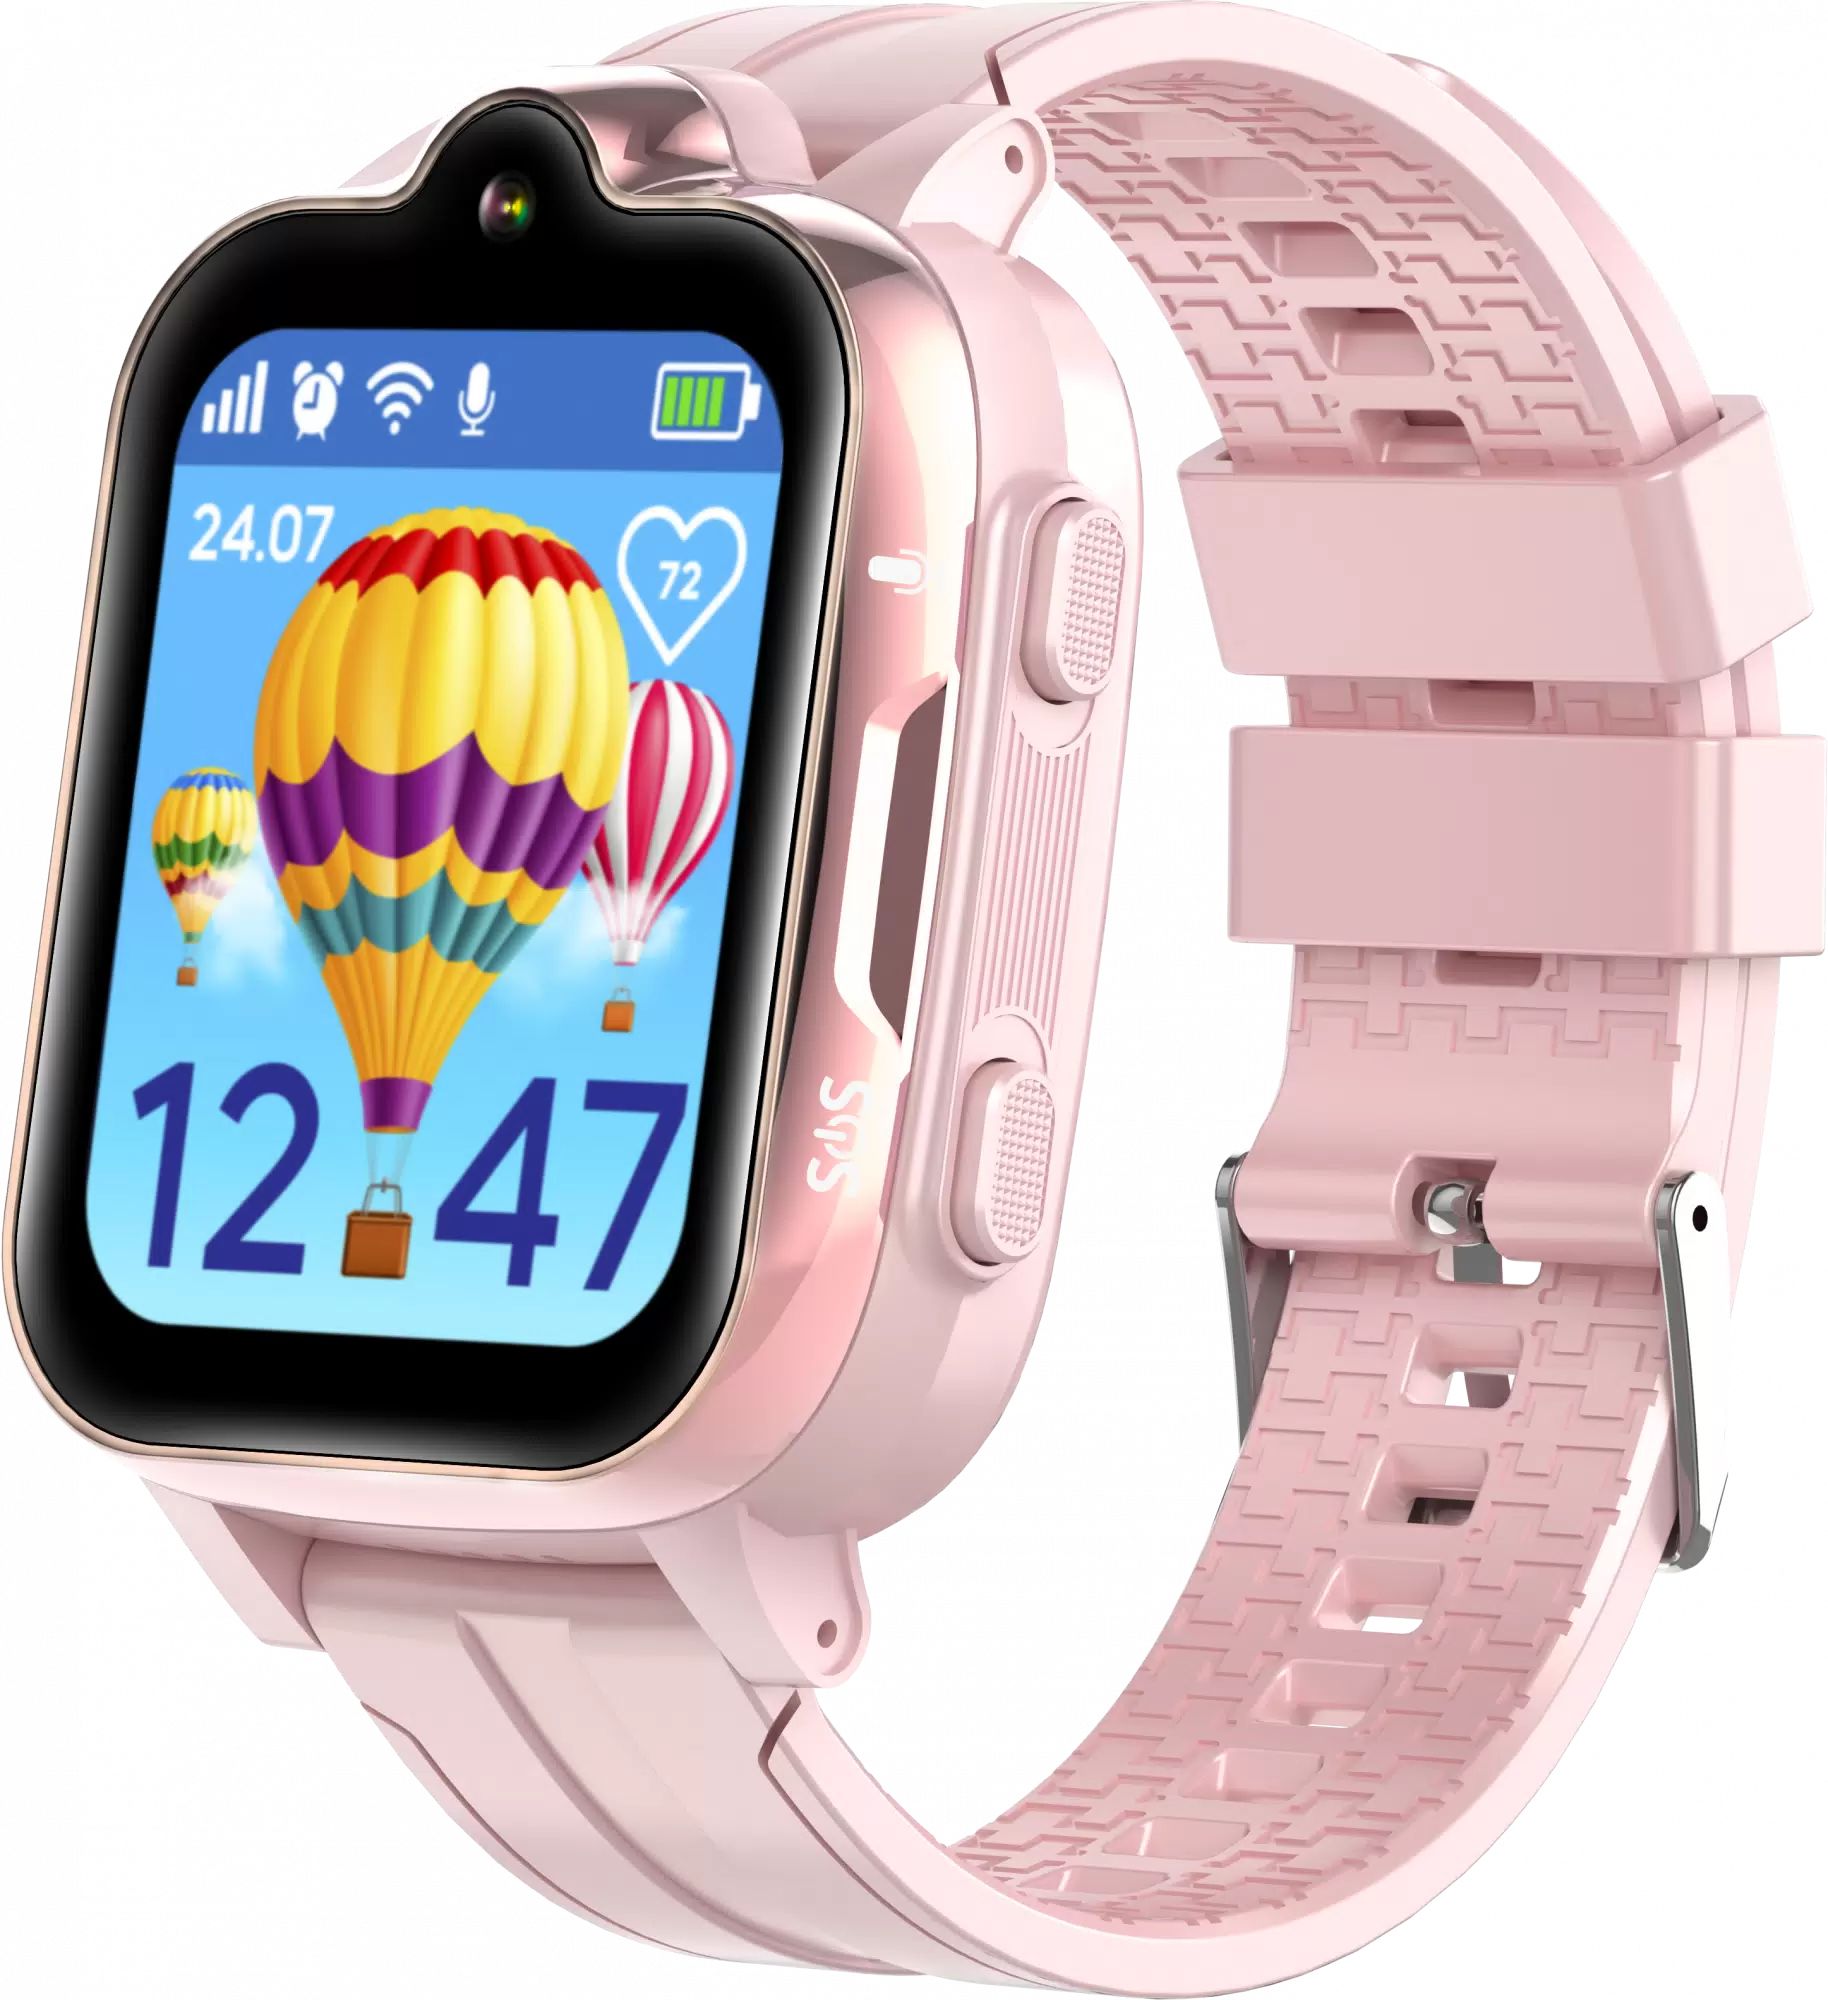 Детские умные часы Aimoto Trend Pink отличное состояние - фото 1